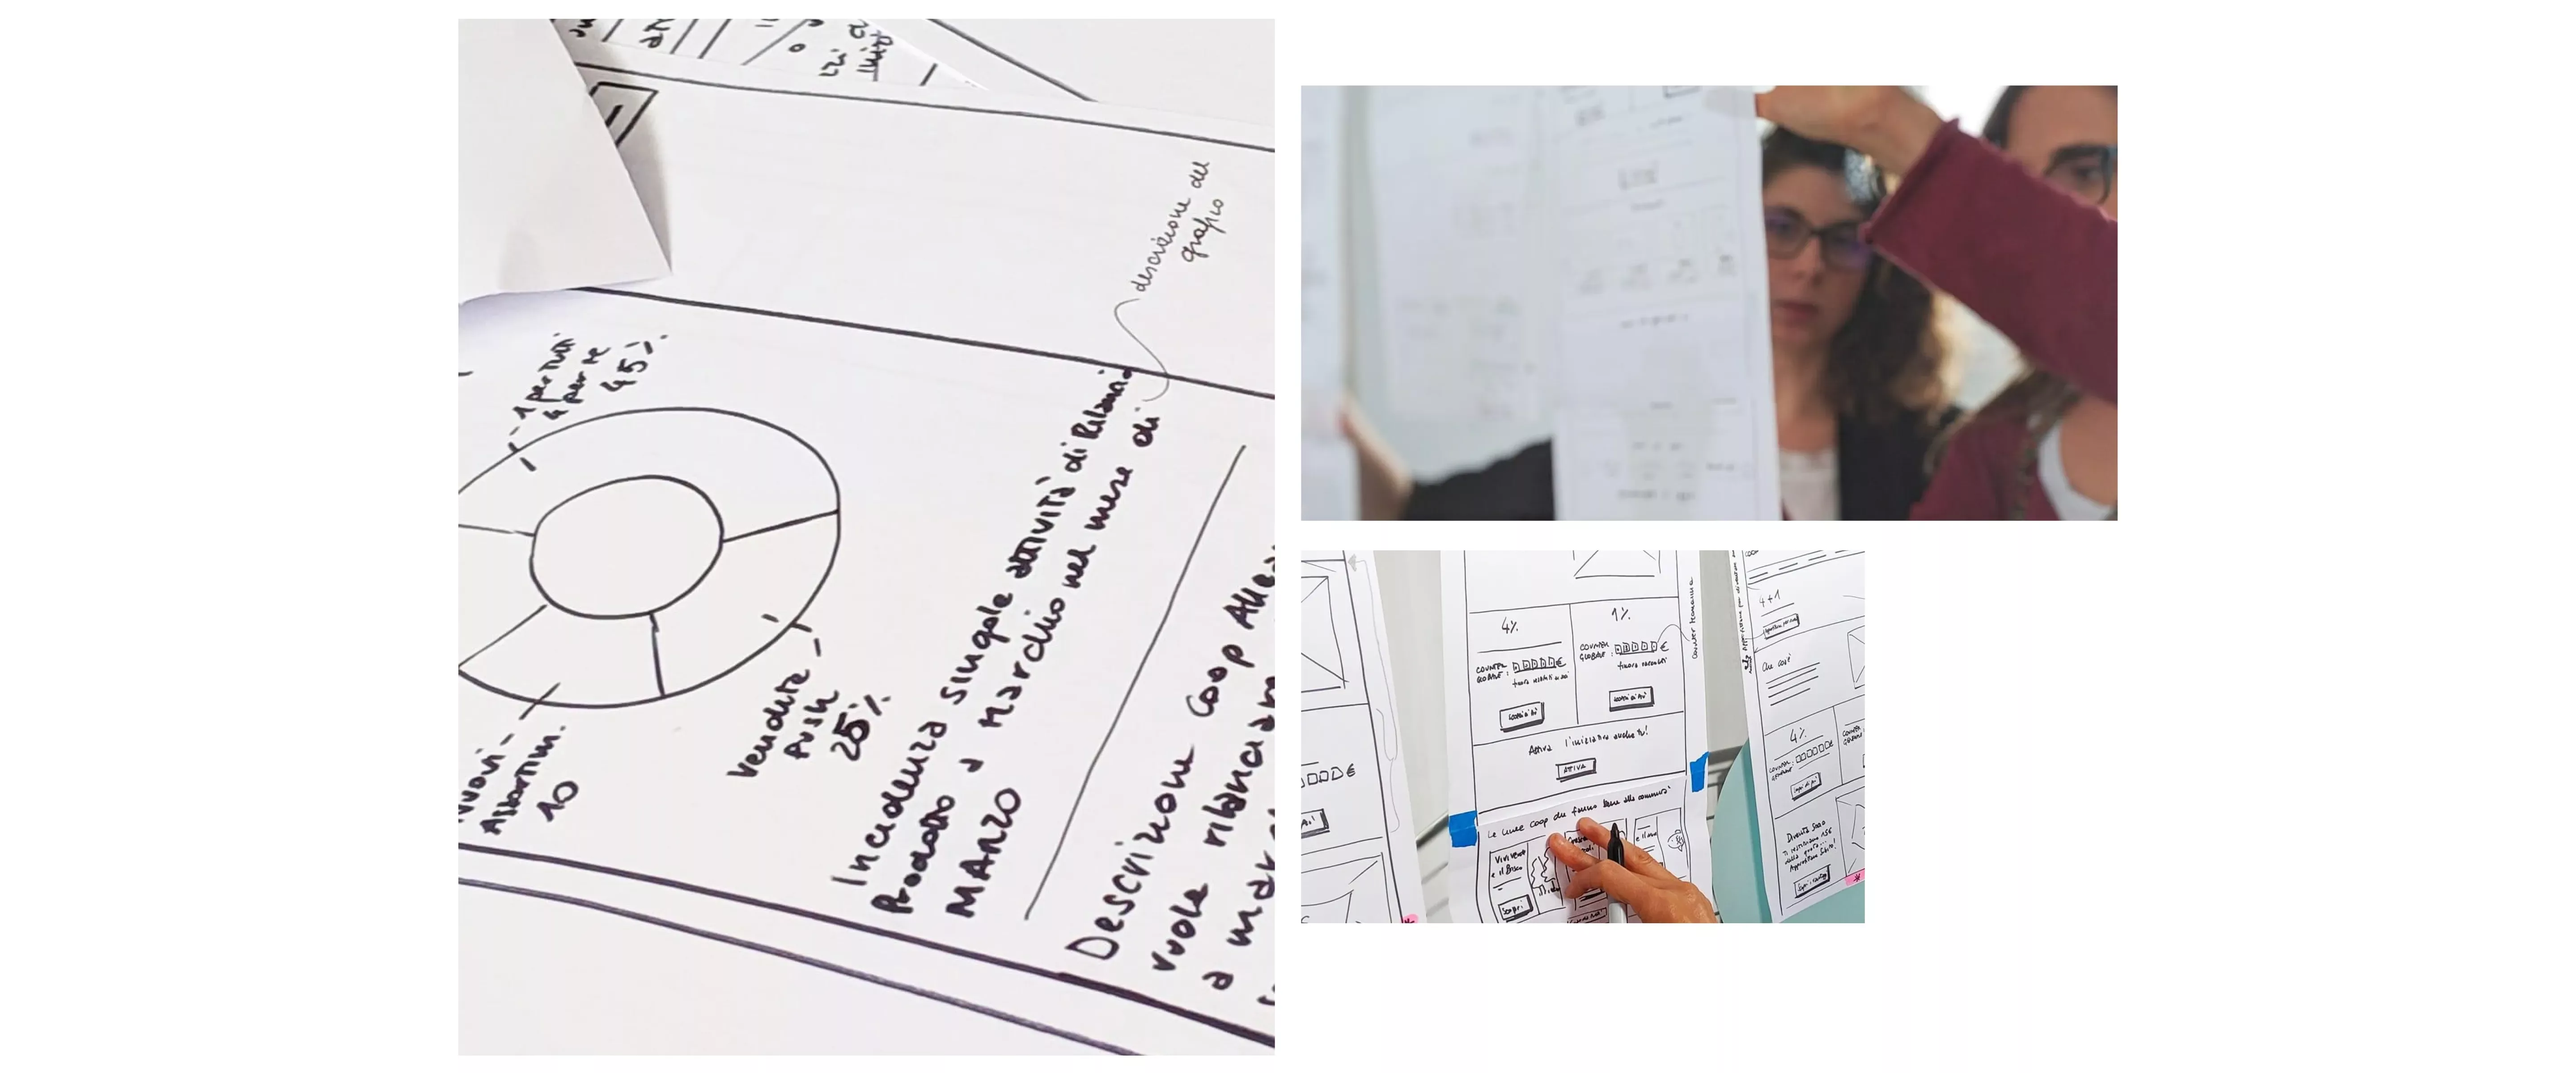 Alcuni sketches su carta delle soluzioni di design